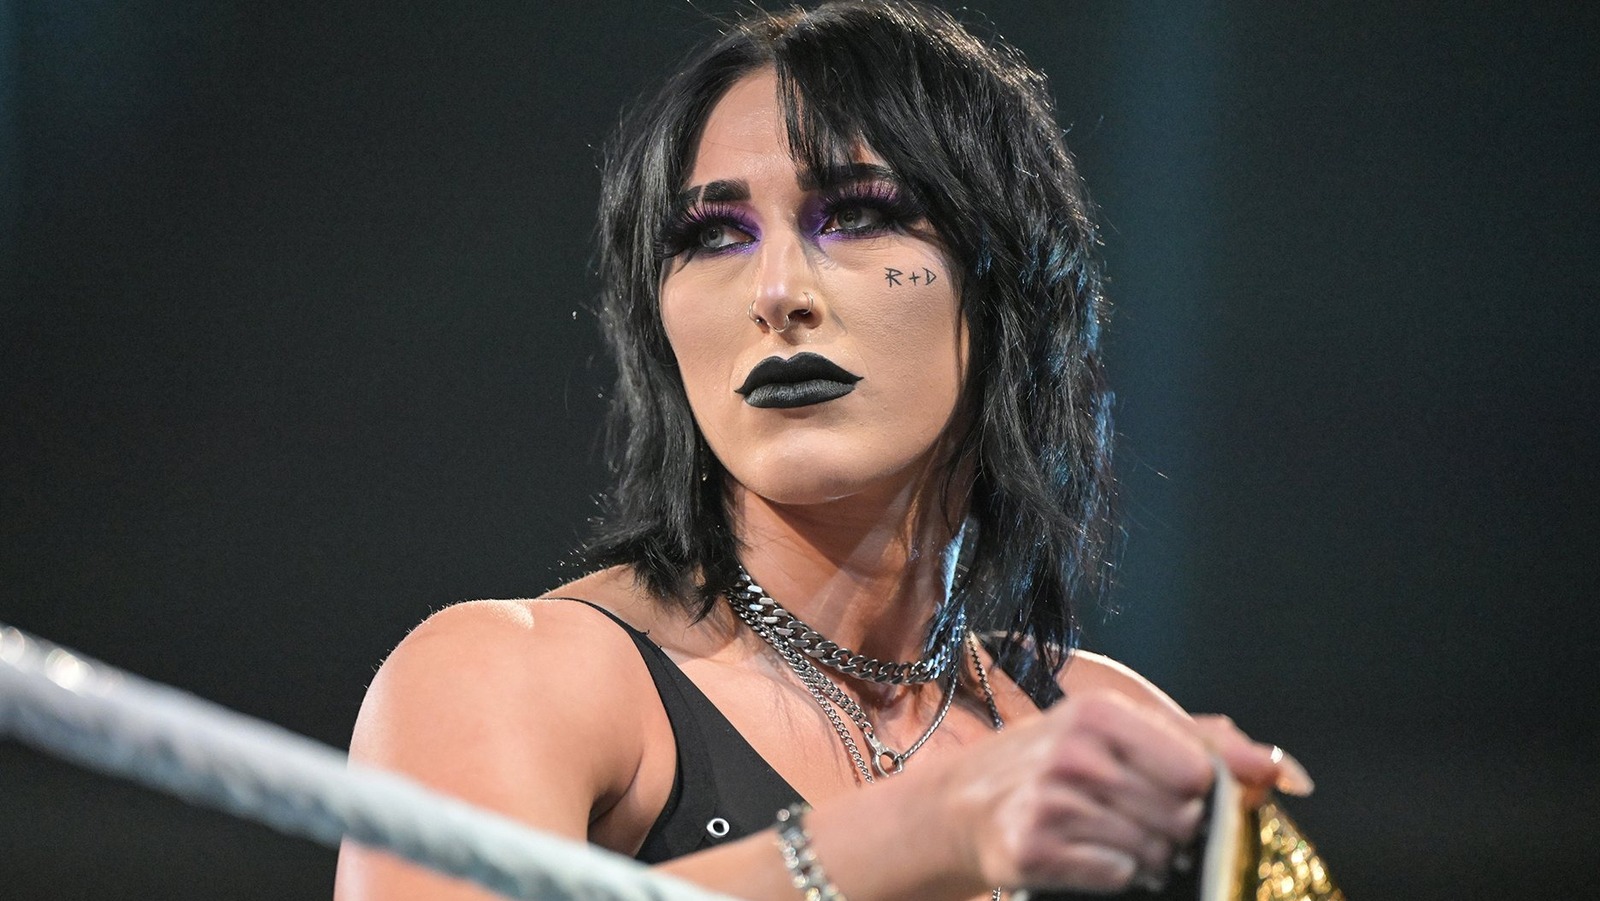 Rhea Ripley habla sobre cómo su personalidad la ayuda a conectarse con los fanáticos de la WWE